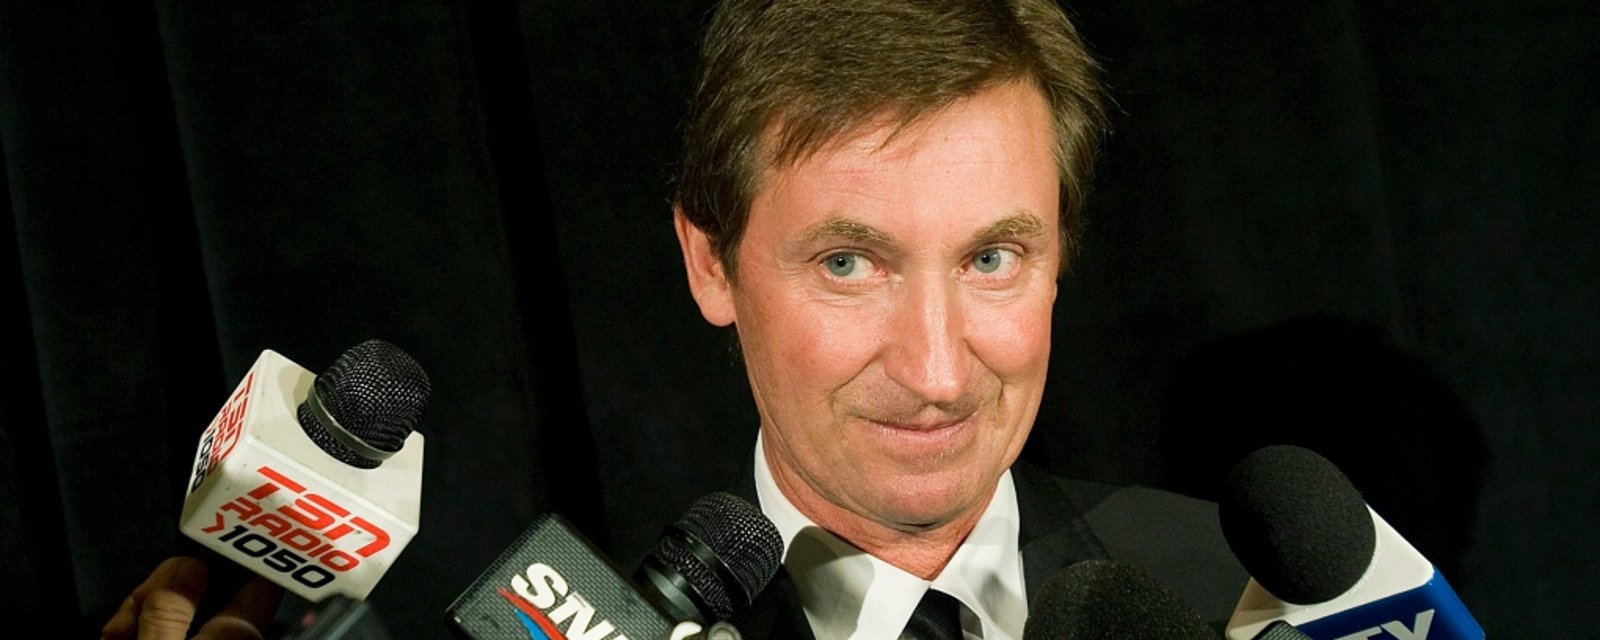 Wayne Gretzky gets offer to return to NHL 